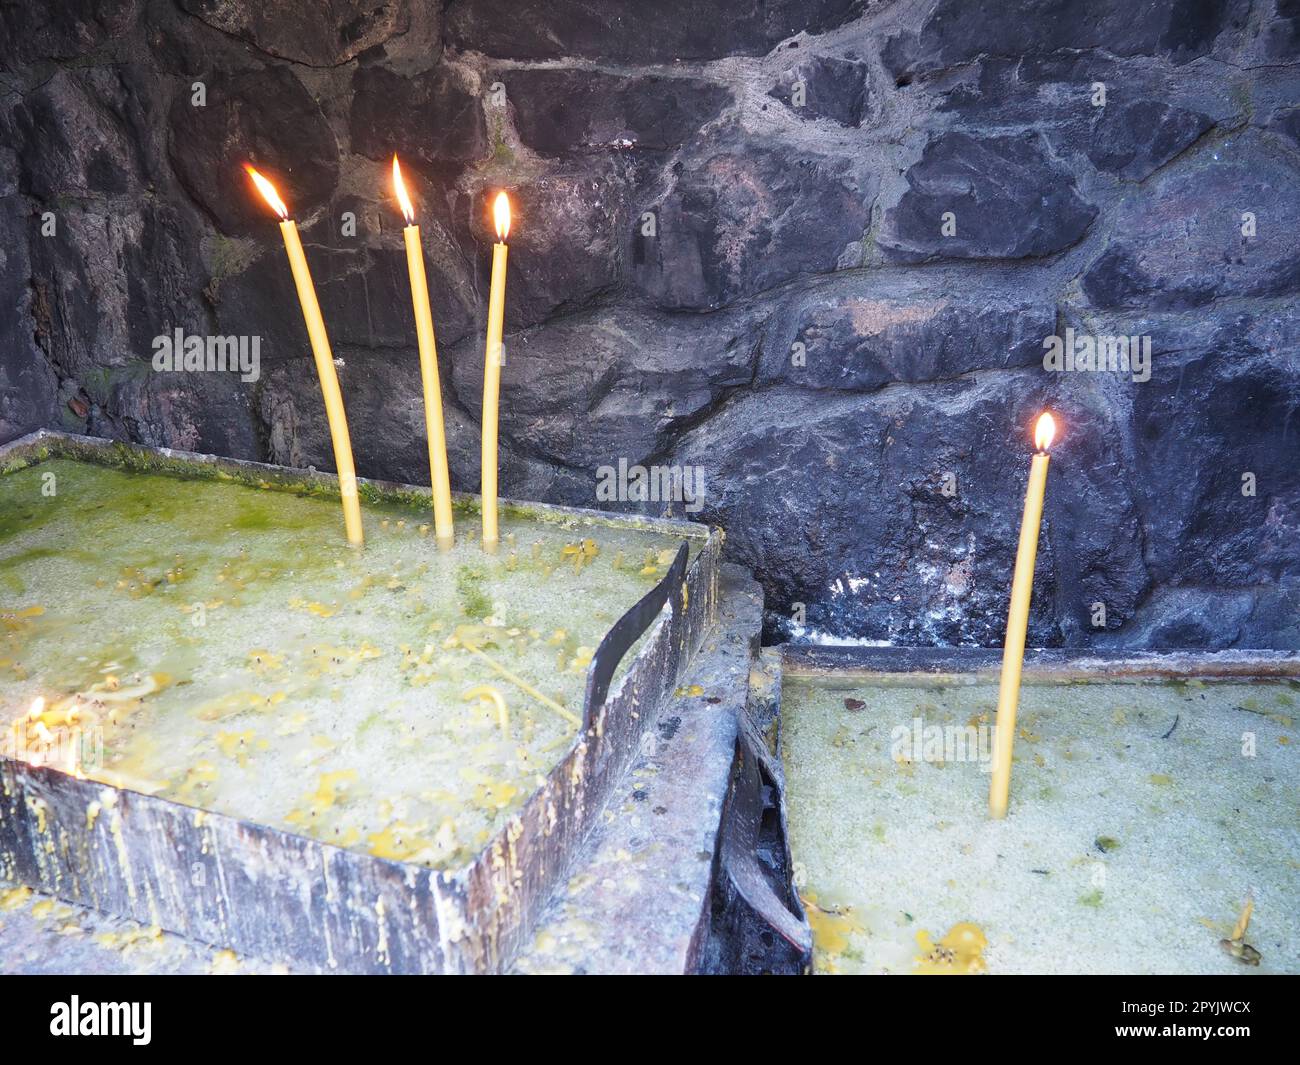 Brennende Kerzen für Frieden oder Gesundheit. Religiöser Ritus der Kirche. Drei Kerzen auf der linken Seite, eine auf der rechten Seite. Geschmolzenes Wachs in einem Metallbehälter. Steinhintergrund. Stockfoto